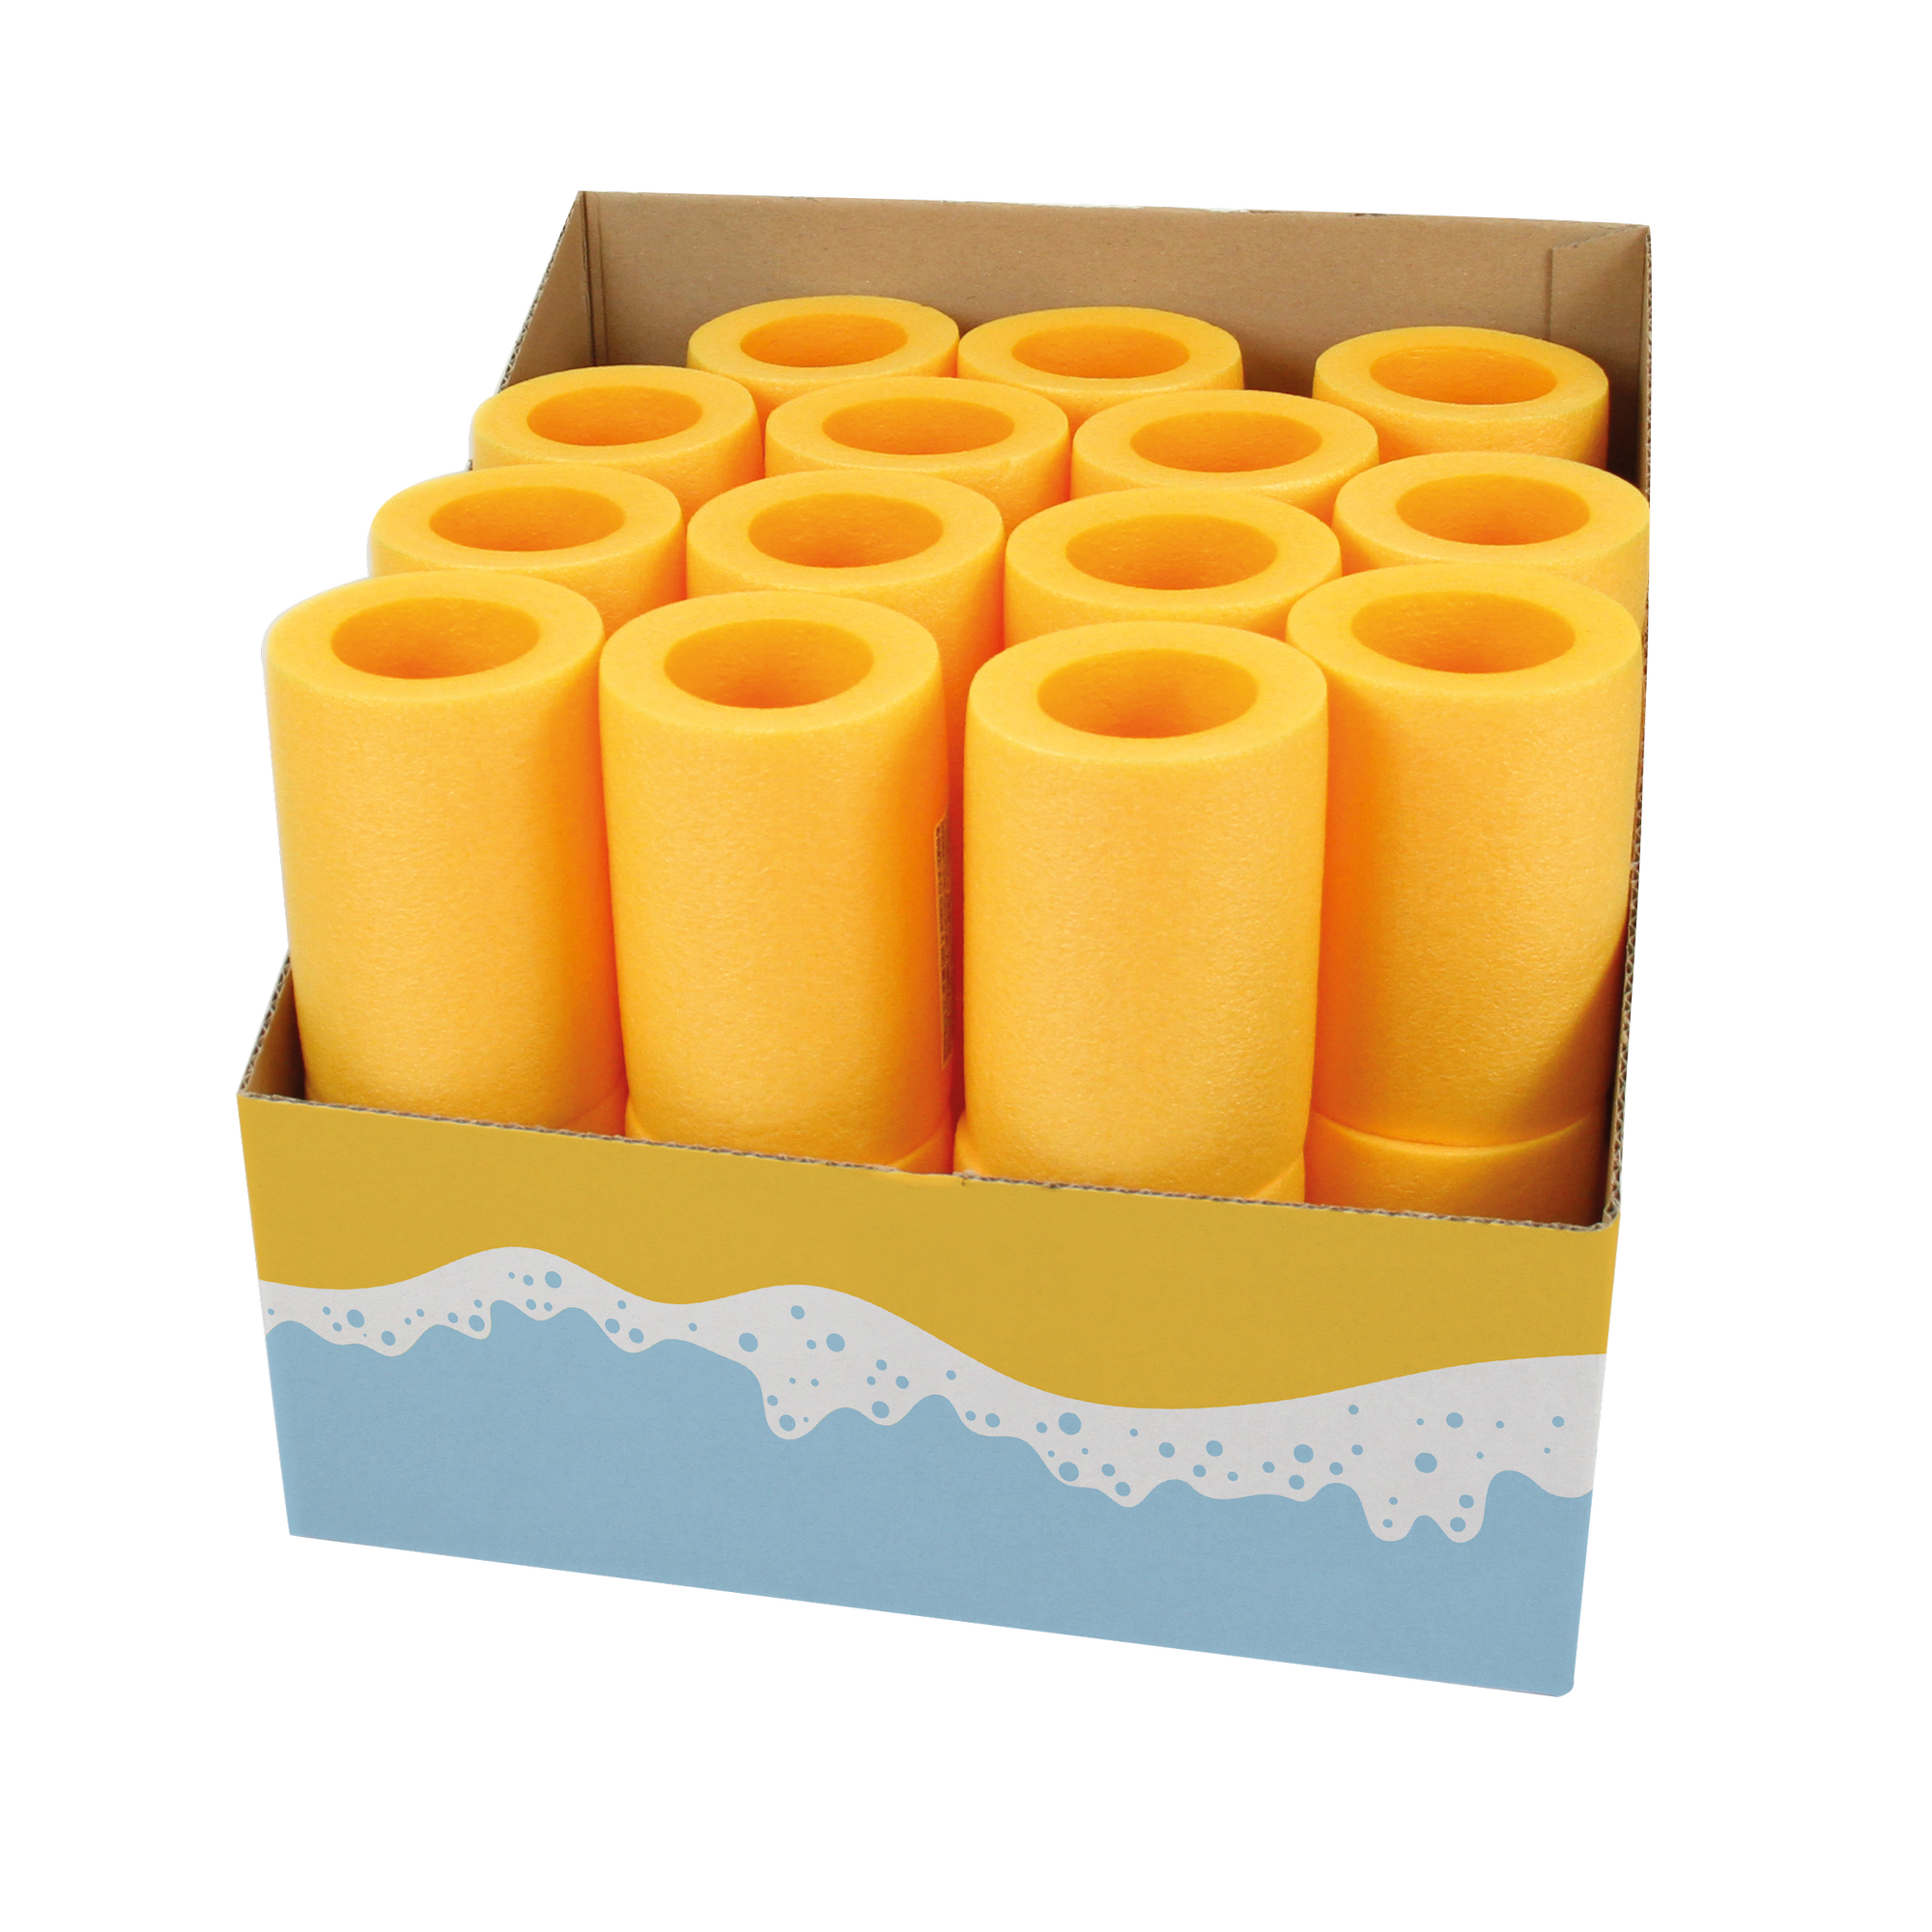 Wassernudel-Verbindungsstück gelb Ø 6,4 cm + product picture